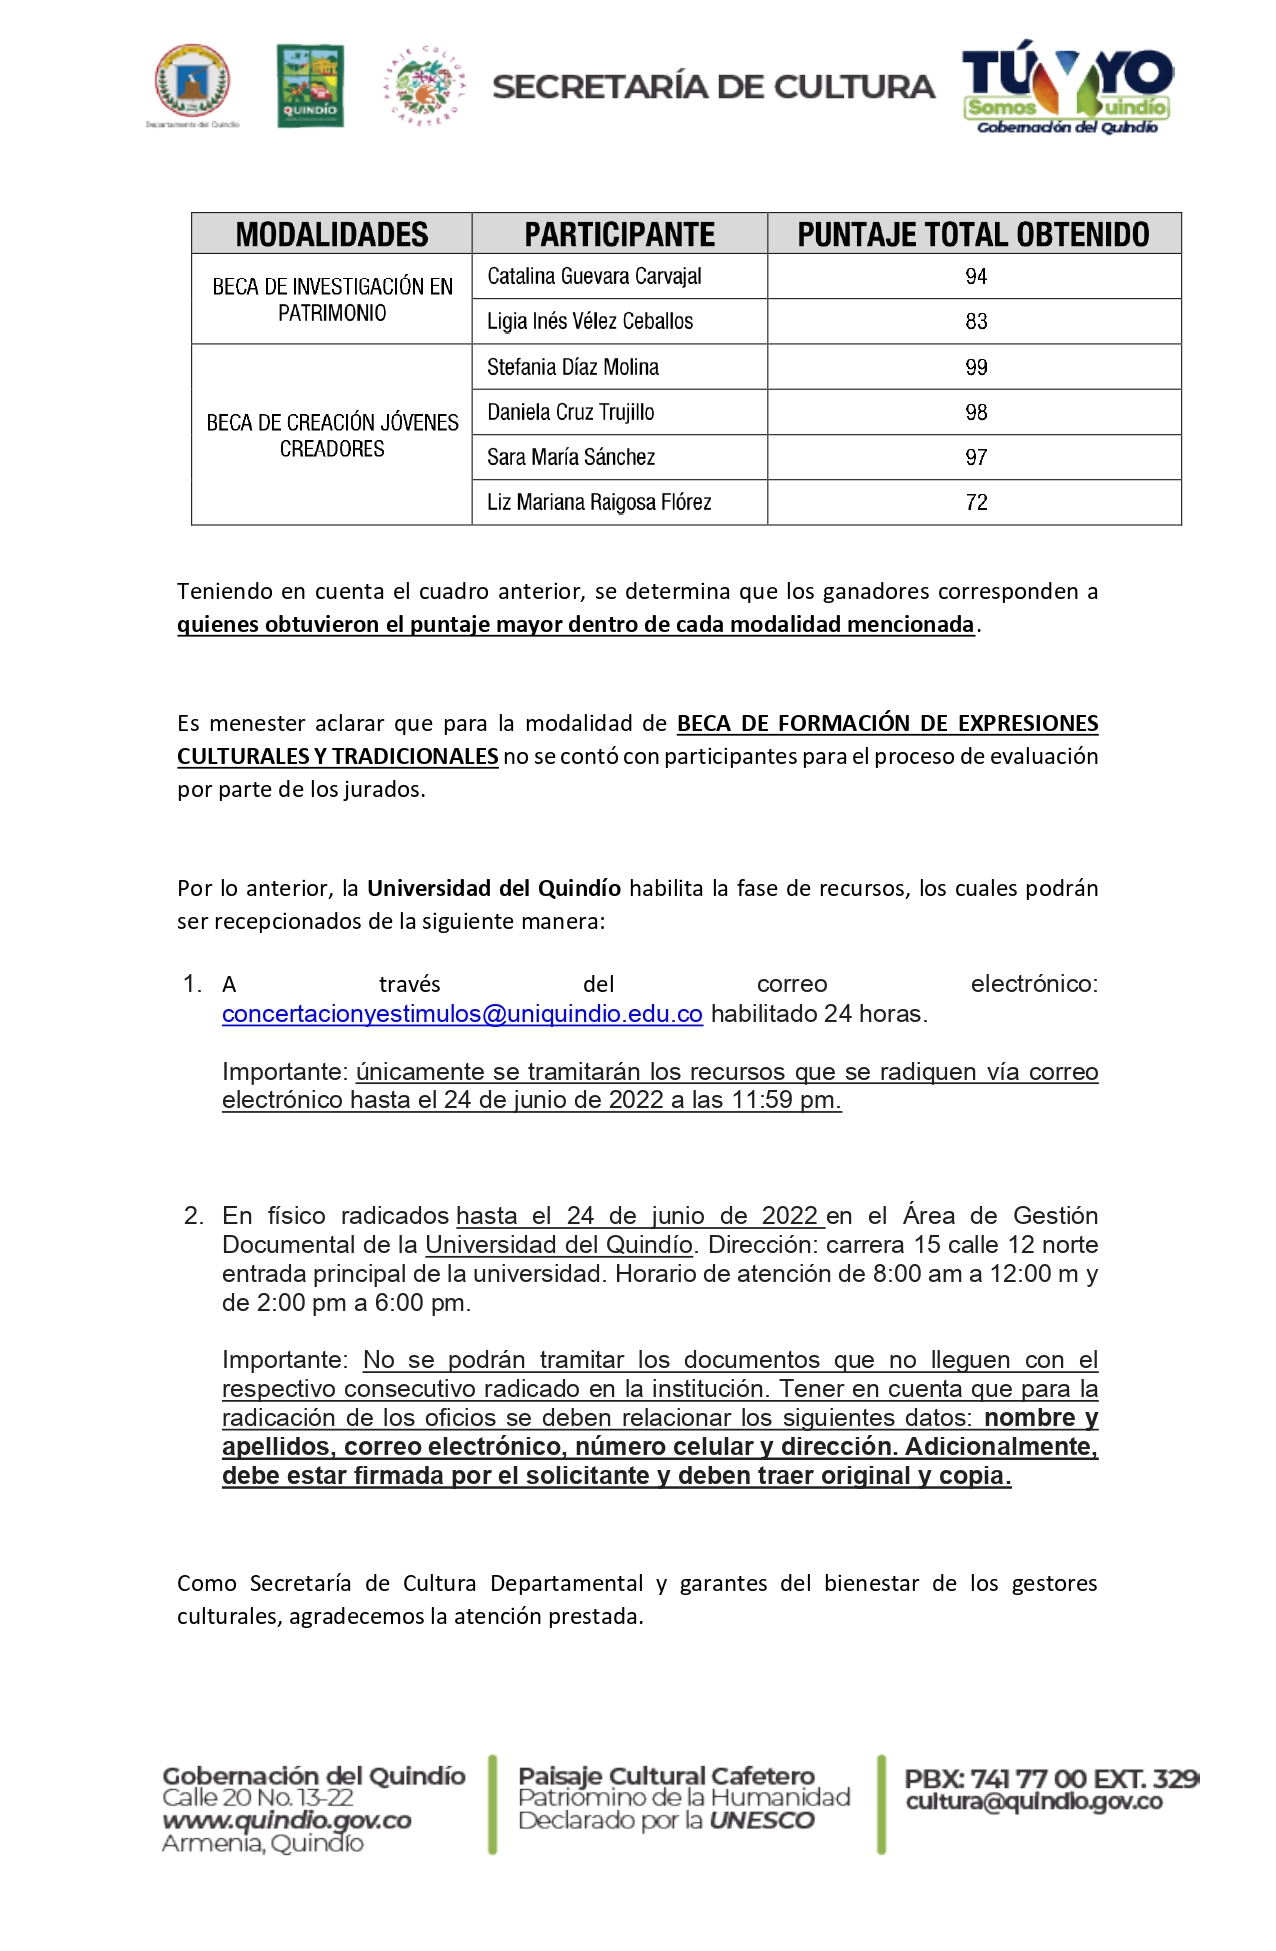 LISTADO_DE_PERSONAS_NATURALES_GANADORAS_ESTÍMULOS_2022_page-0002.jpg - 701.26 kB